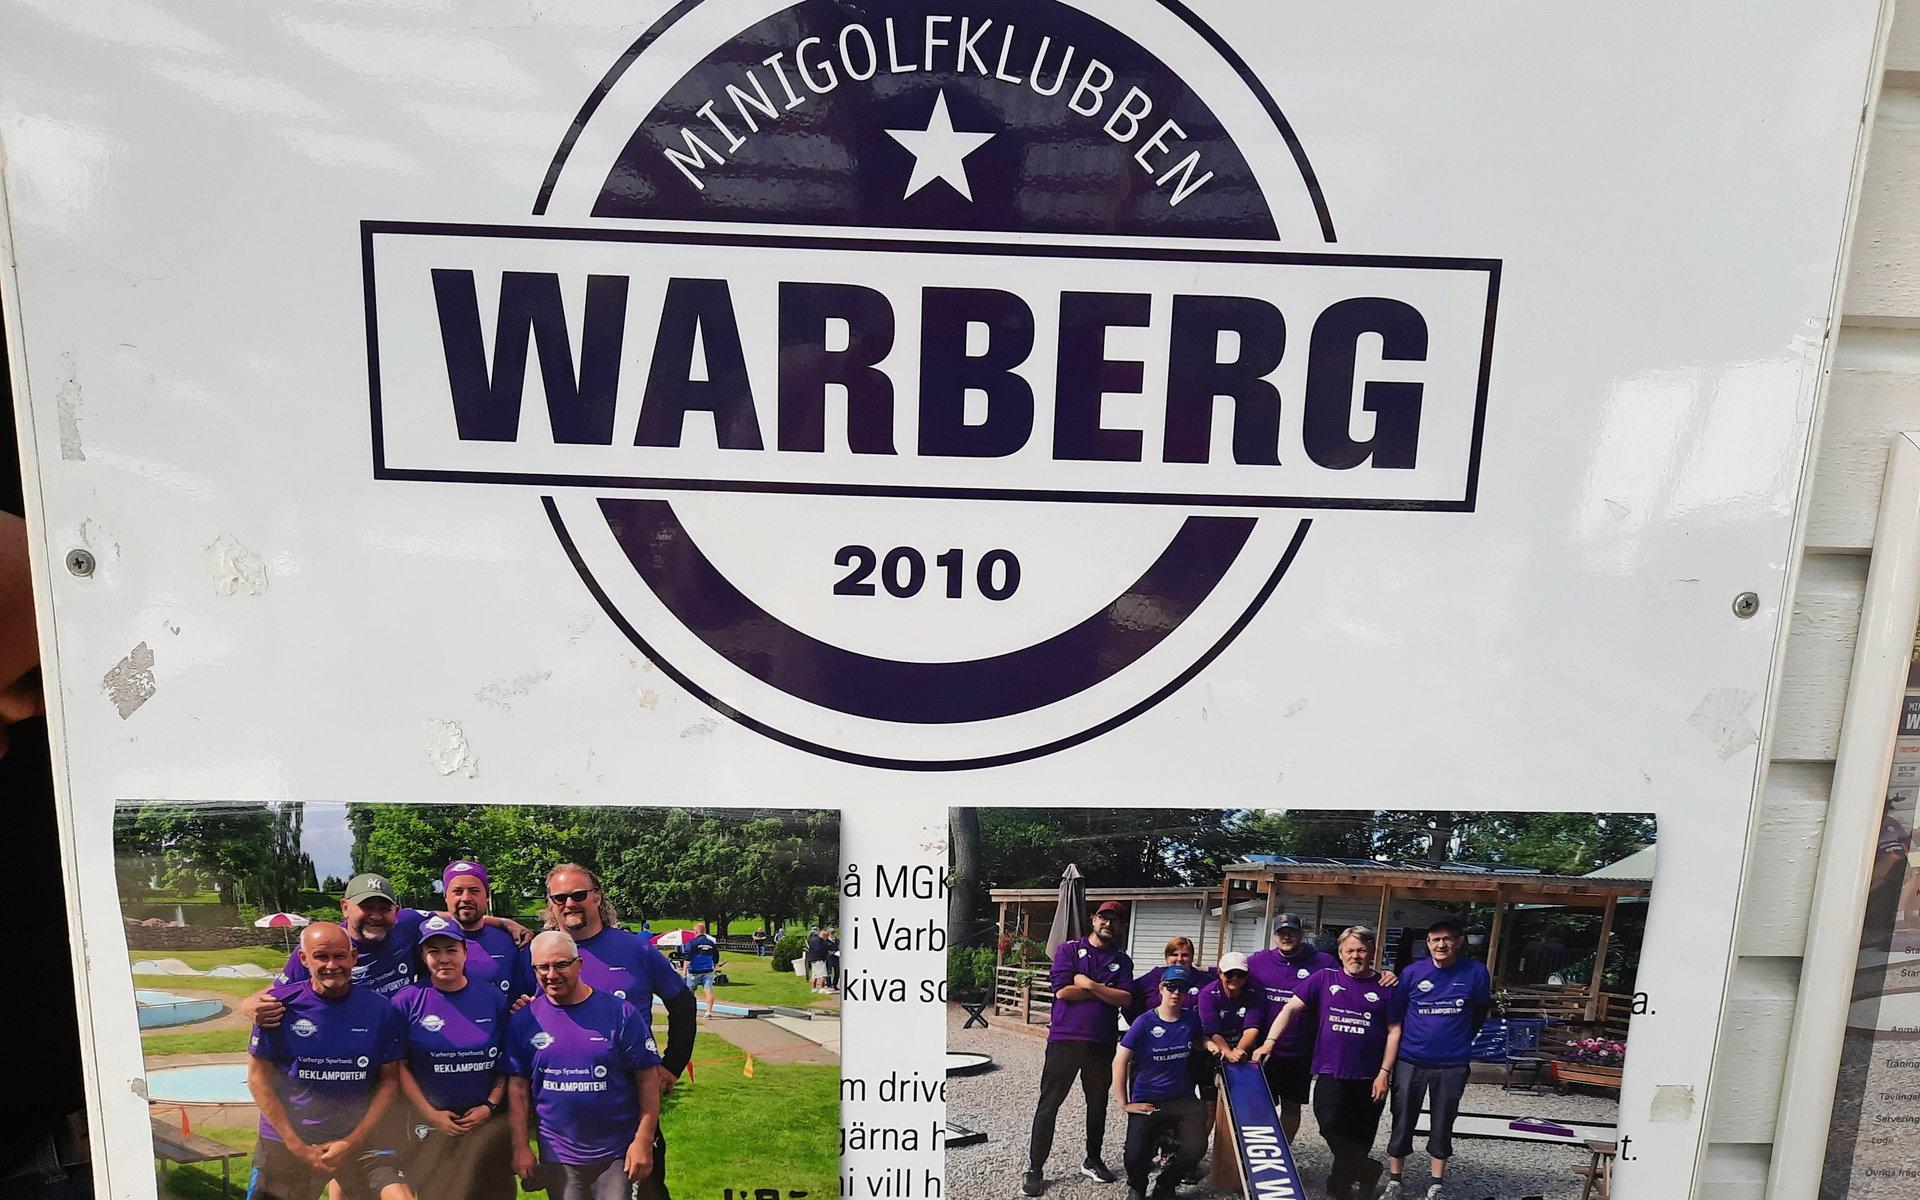 Minigolfklubben Warberg odlar framgångar i tävlingar över hela landet.